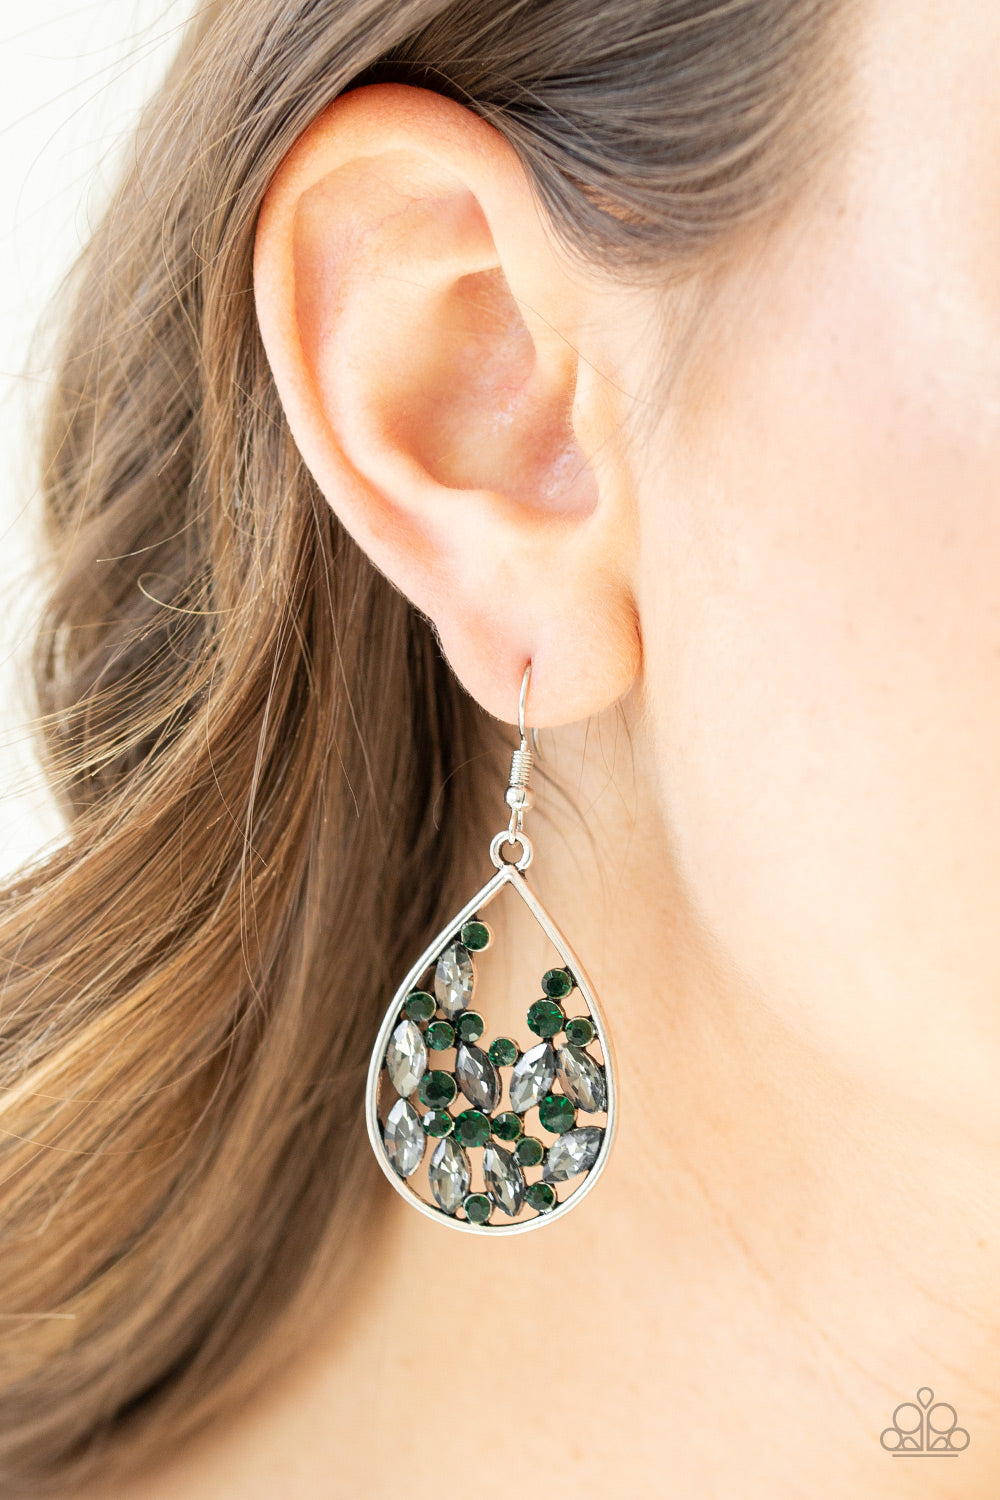 Cash or Crystal? - Green earrings